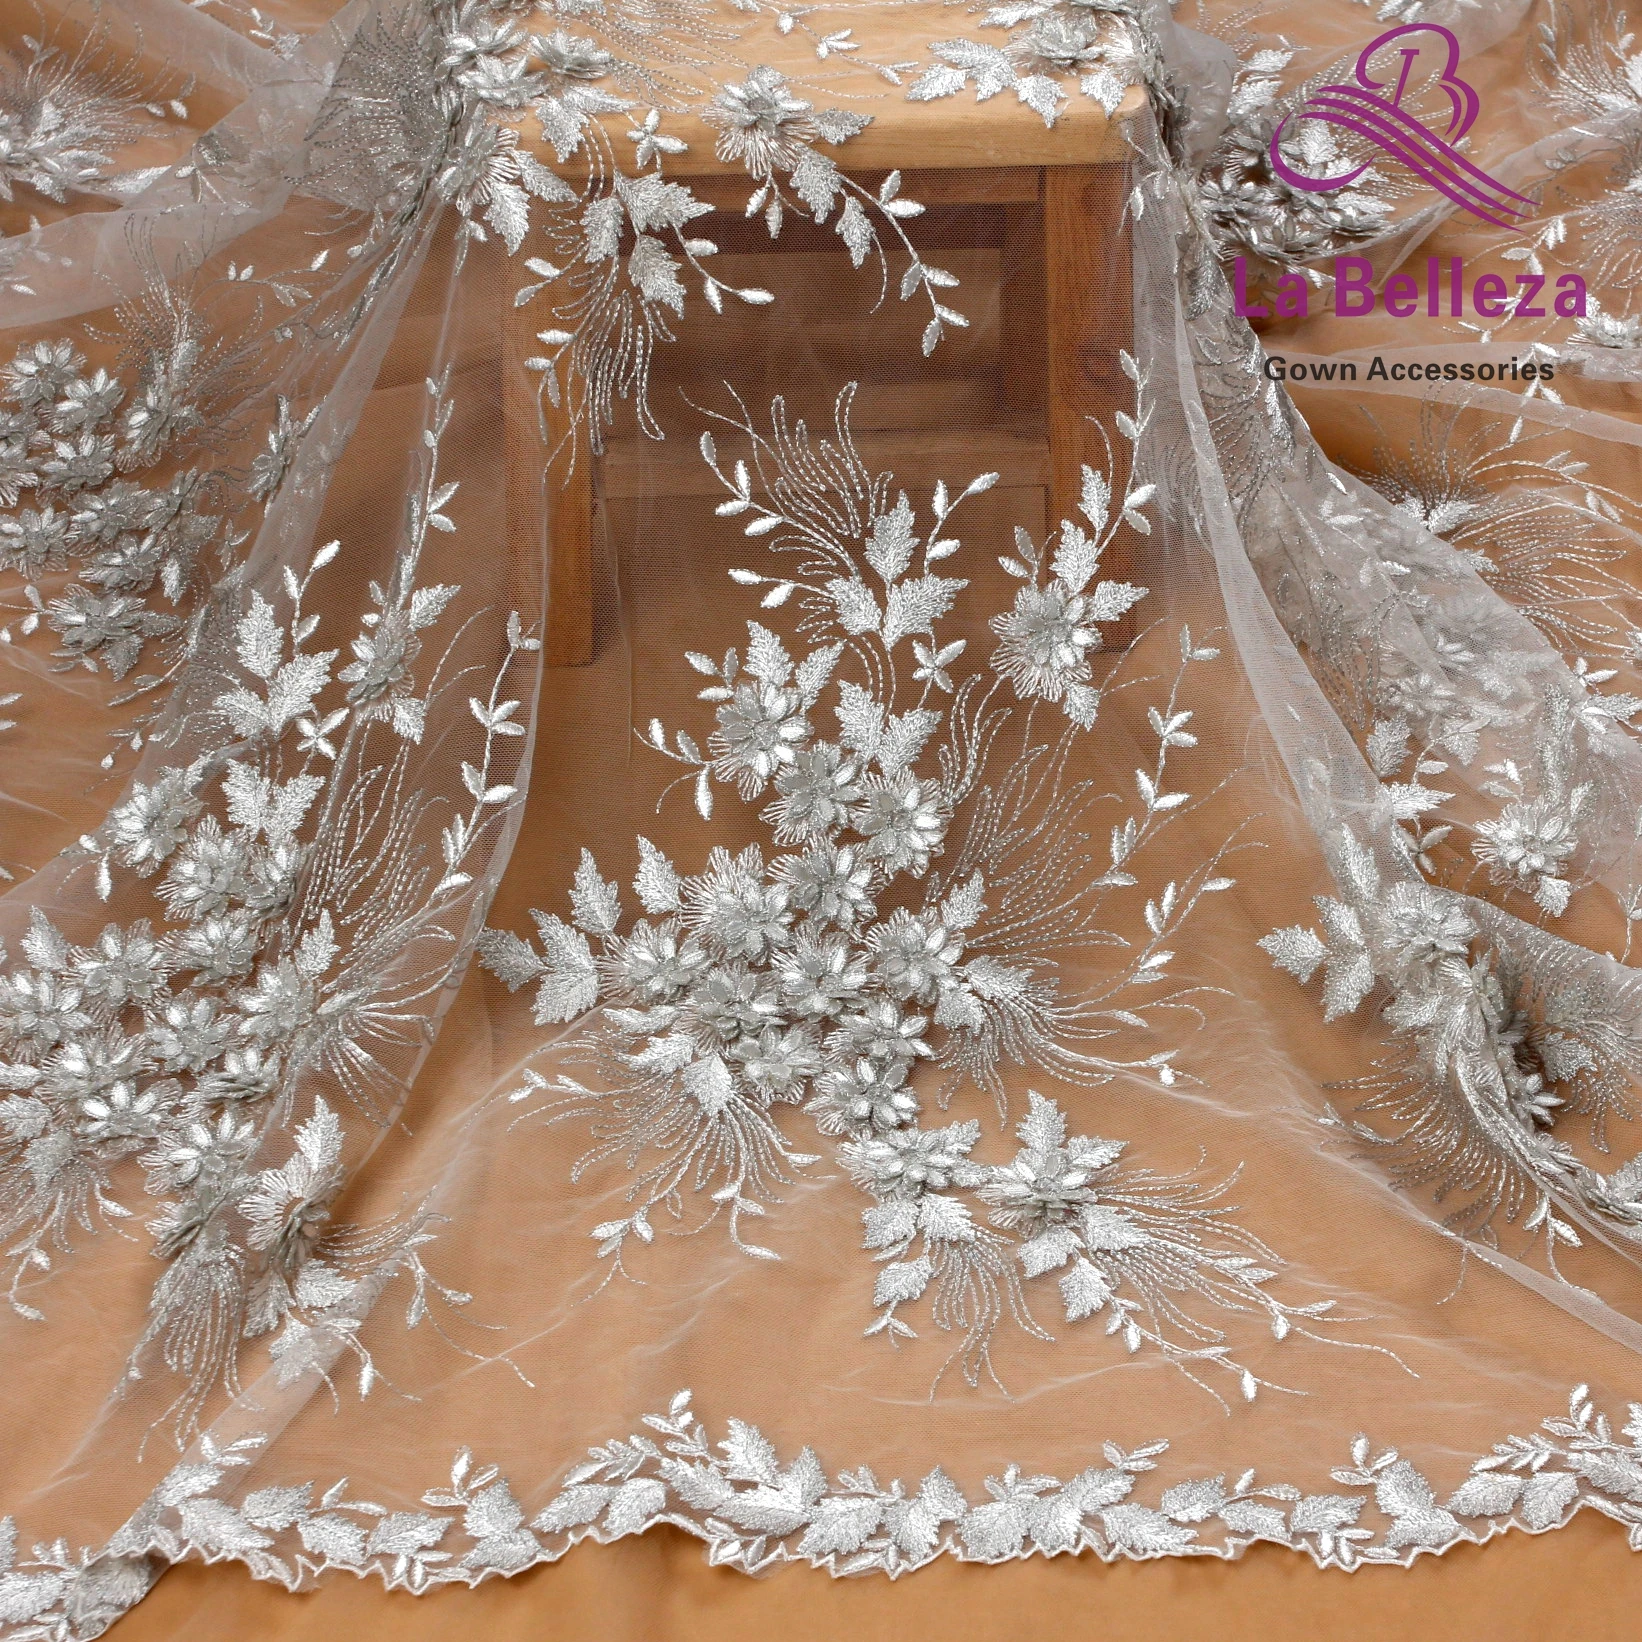 La Belleza дизайн кружева, слоновая кость 3D Цветы кружевная ткань, бежевые 3D Цветы Кружевная Ткань вечернее платье кружевная ткань 1 ярд